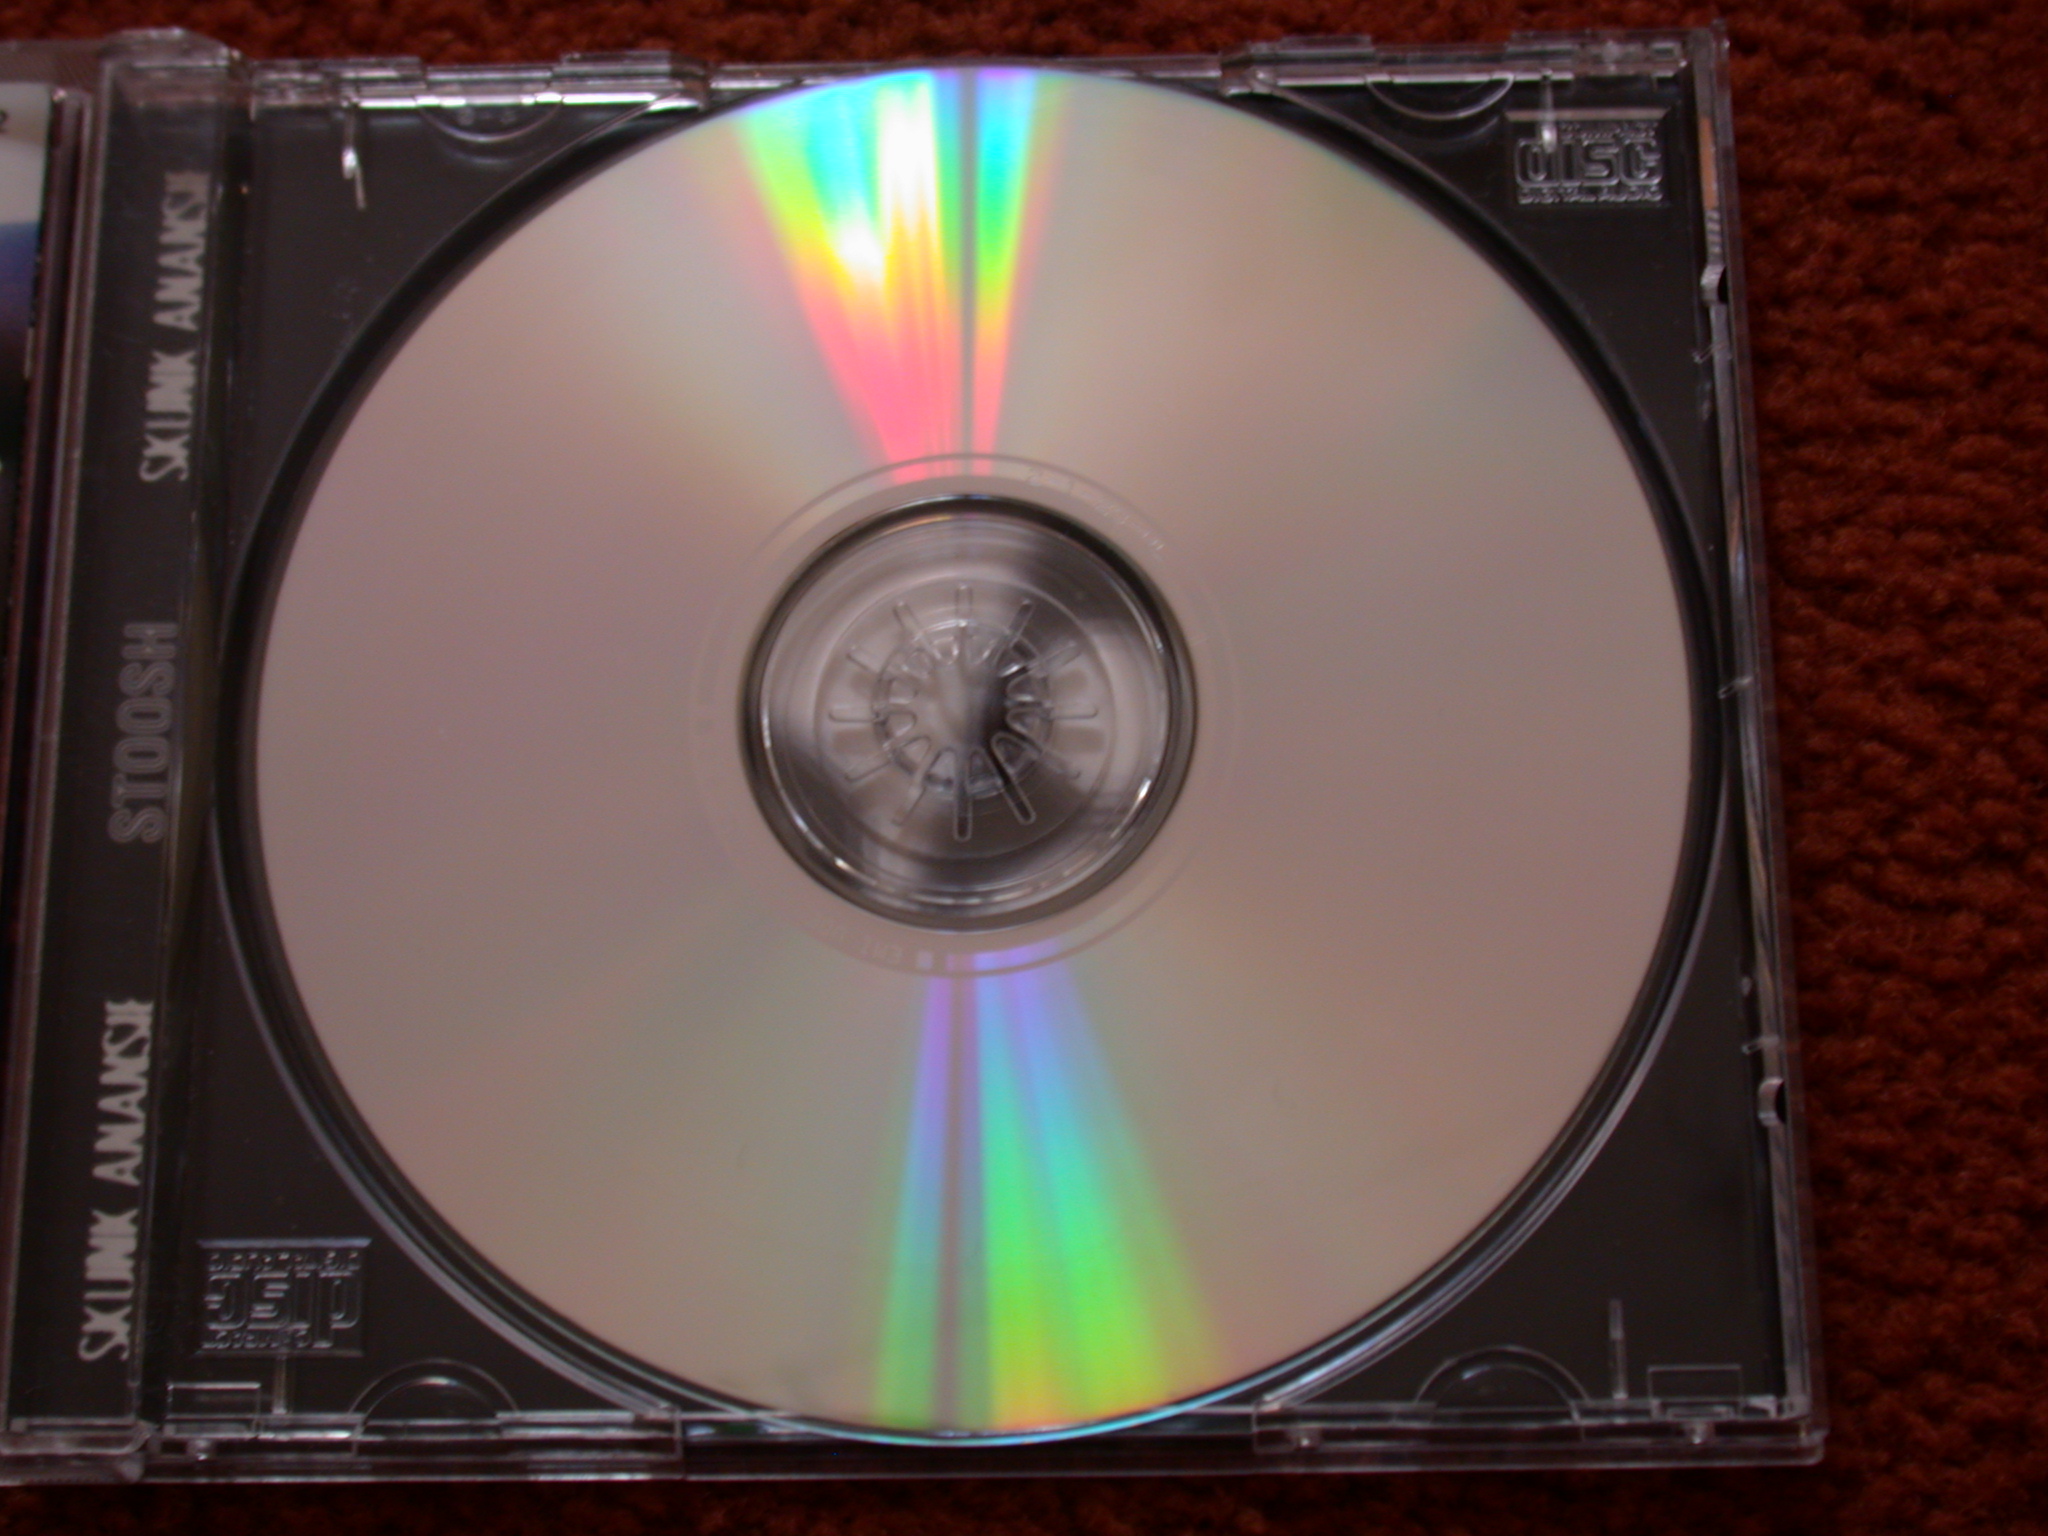 cd objects music data cdrom skunkanansie skunk anansie round circle dvd cdr cdrw sound film jewelcase case rainbow plastic